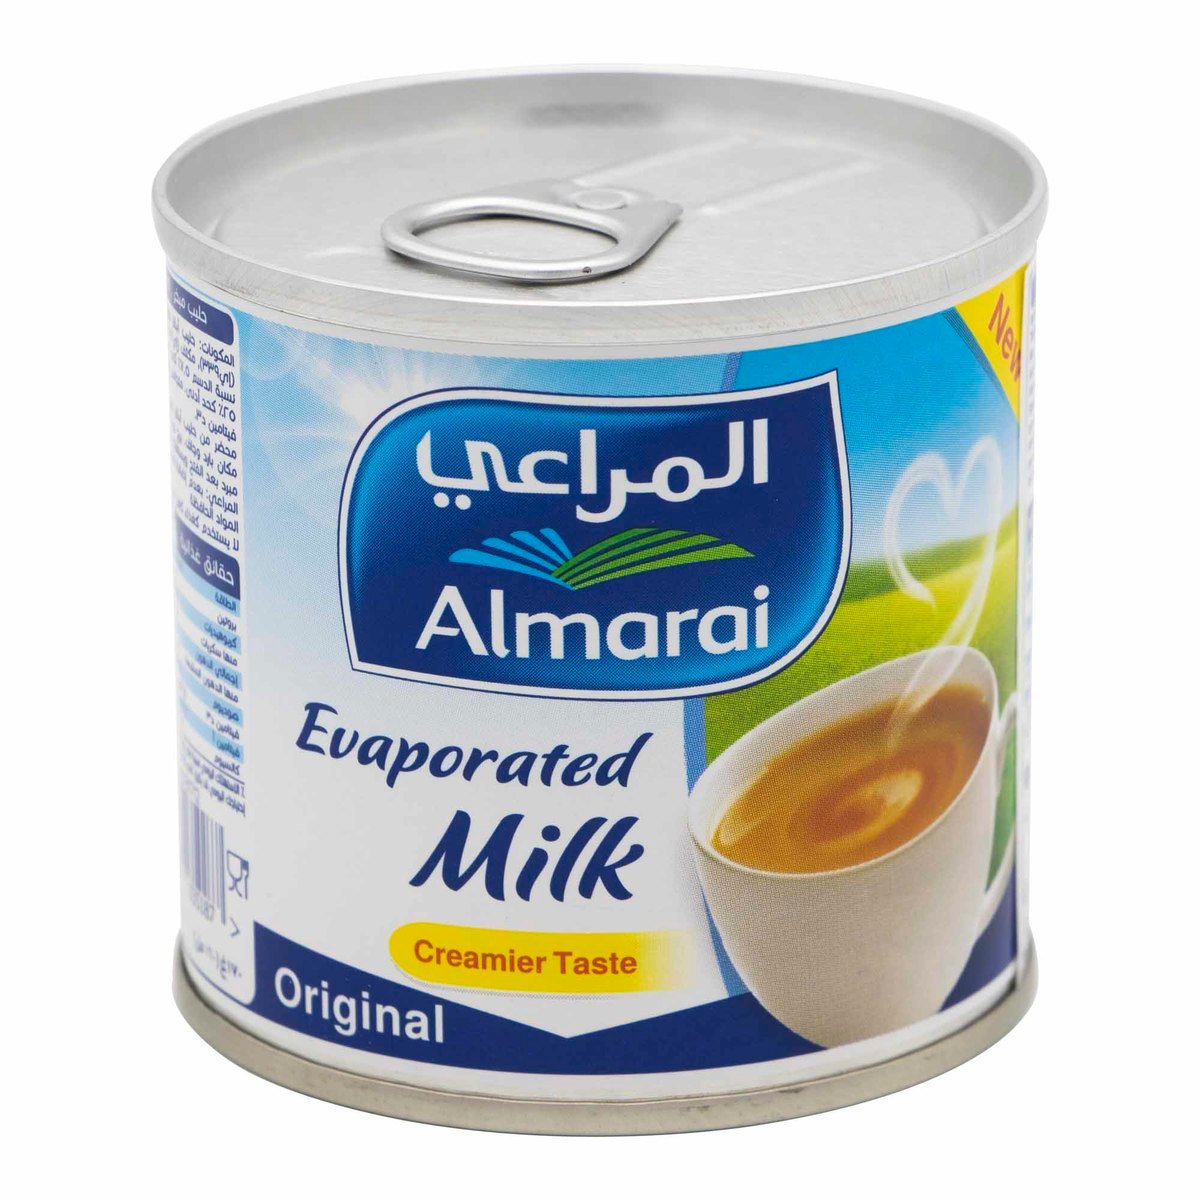 اشتري قم بشراء المراعي حليب مبخر 170 جم Online at Best Price من الموقع - من لولو هايبر ماركت Evaporated Milk في السعودية